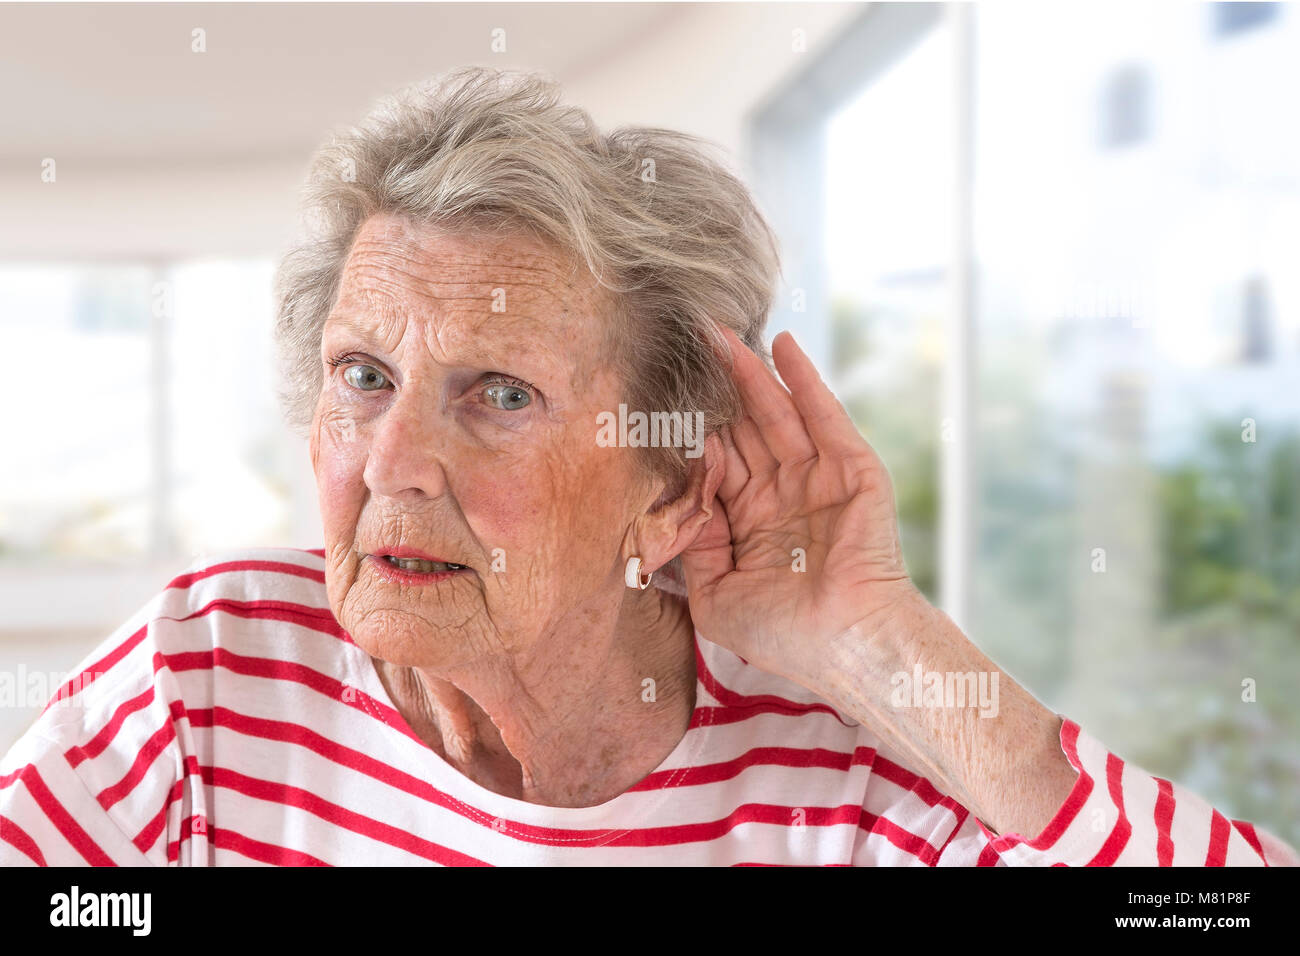 Signora anziana con problemi di udito a causa dell'invecchiamento tenendo la mano al suo orecchio come lei le lotte per sentire, vista di profilo su un grande sfondo di Windows Foto Stock